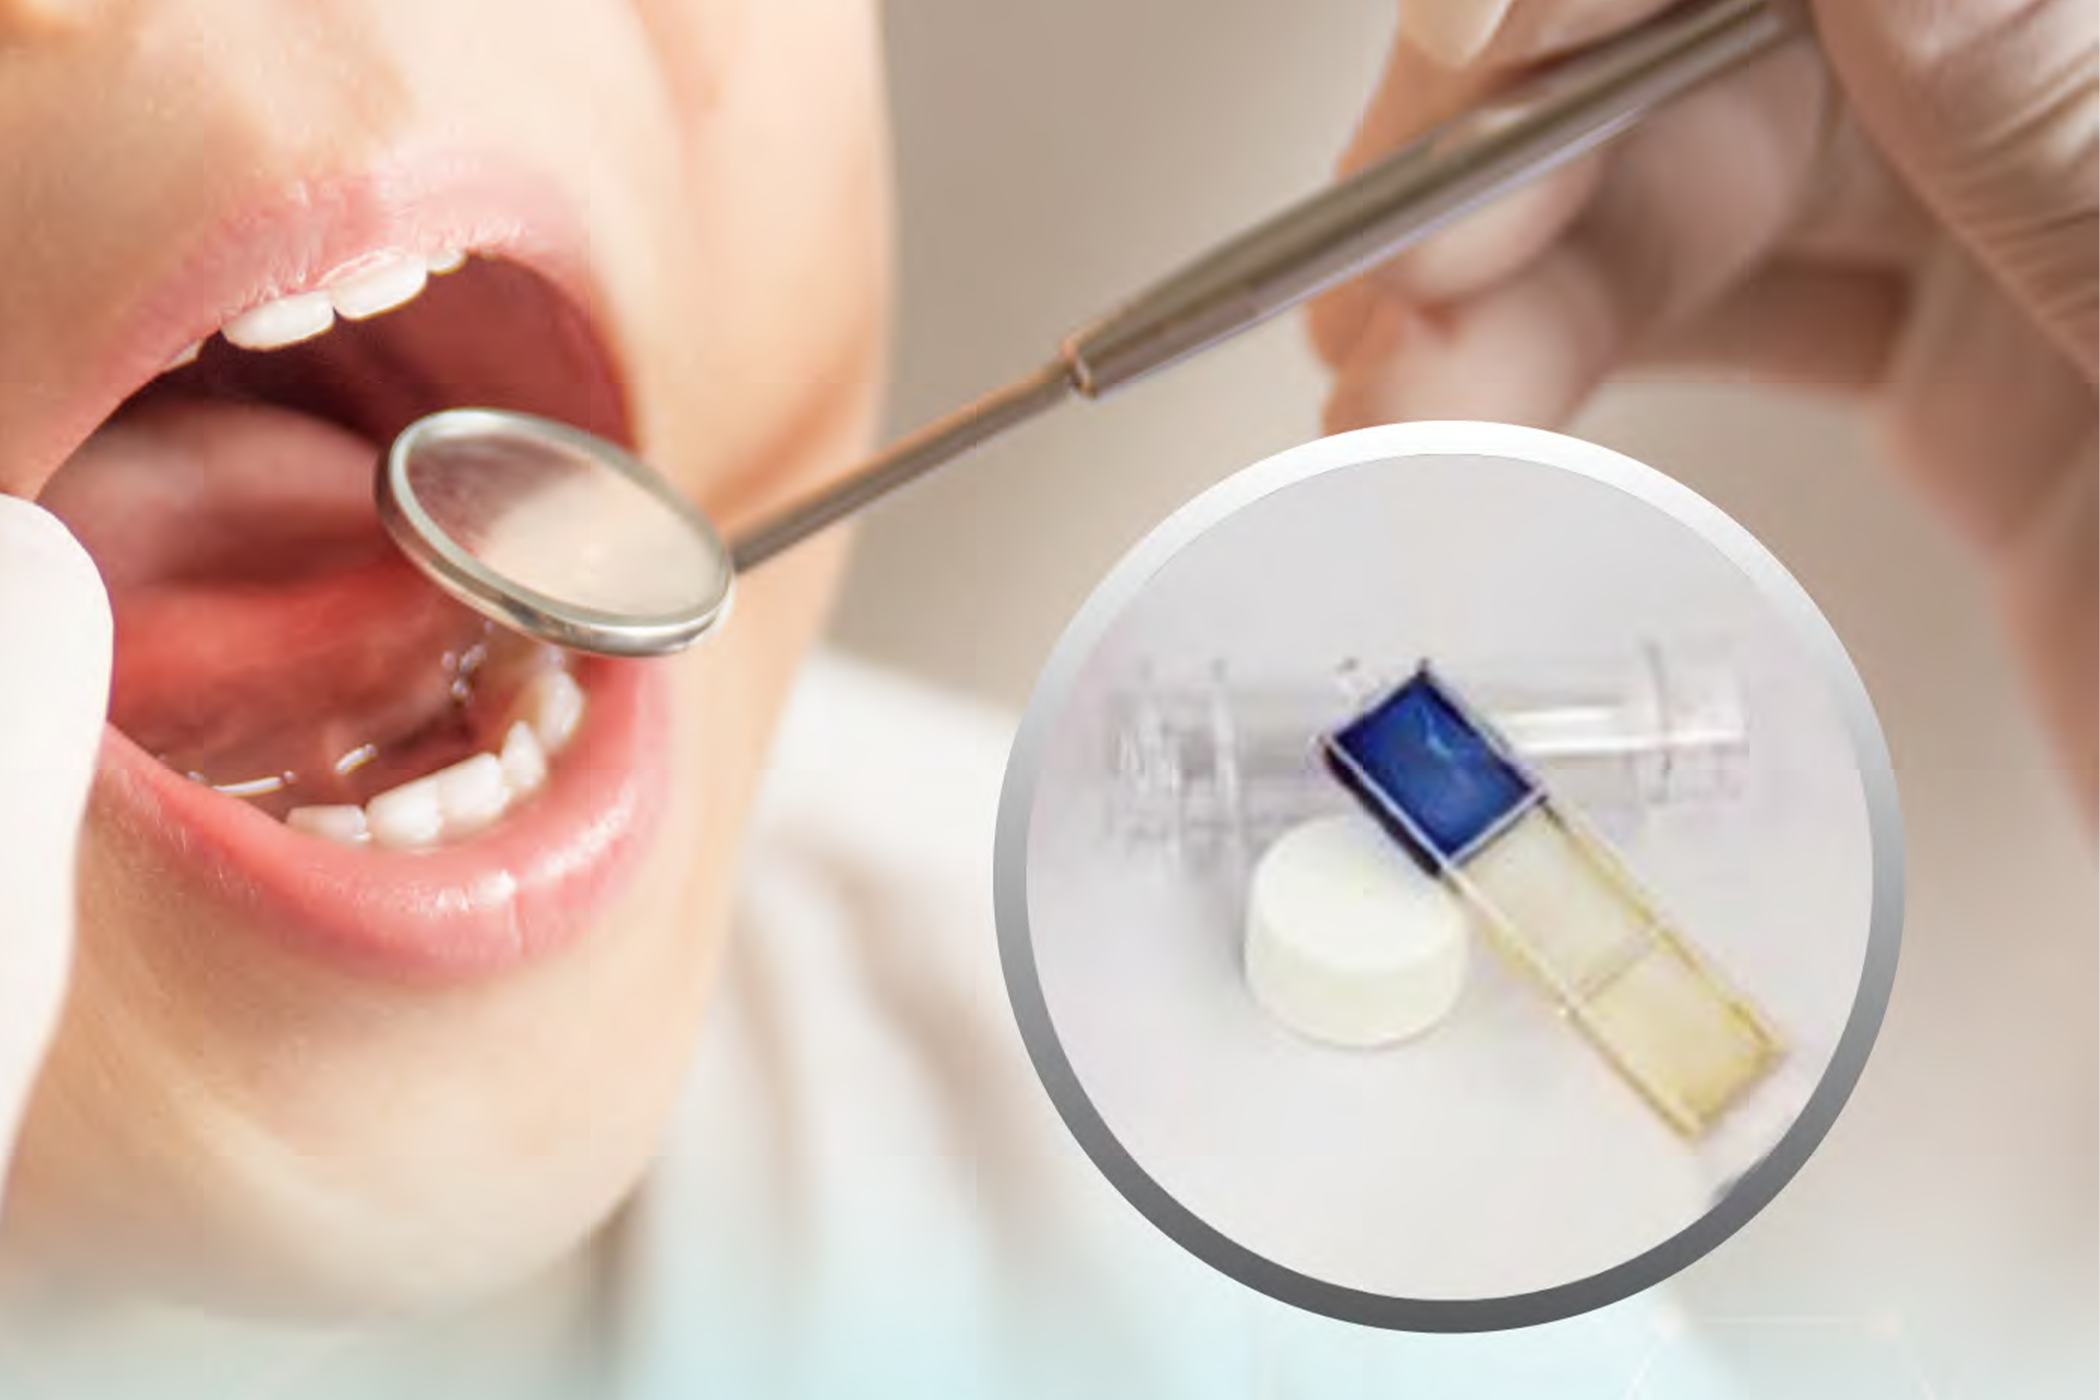 ชุดตรวจประเมินความเสี่ยงต่อโรคฟันผุ